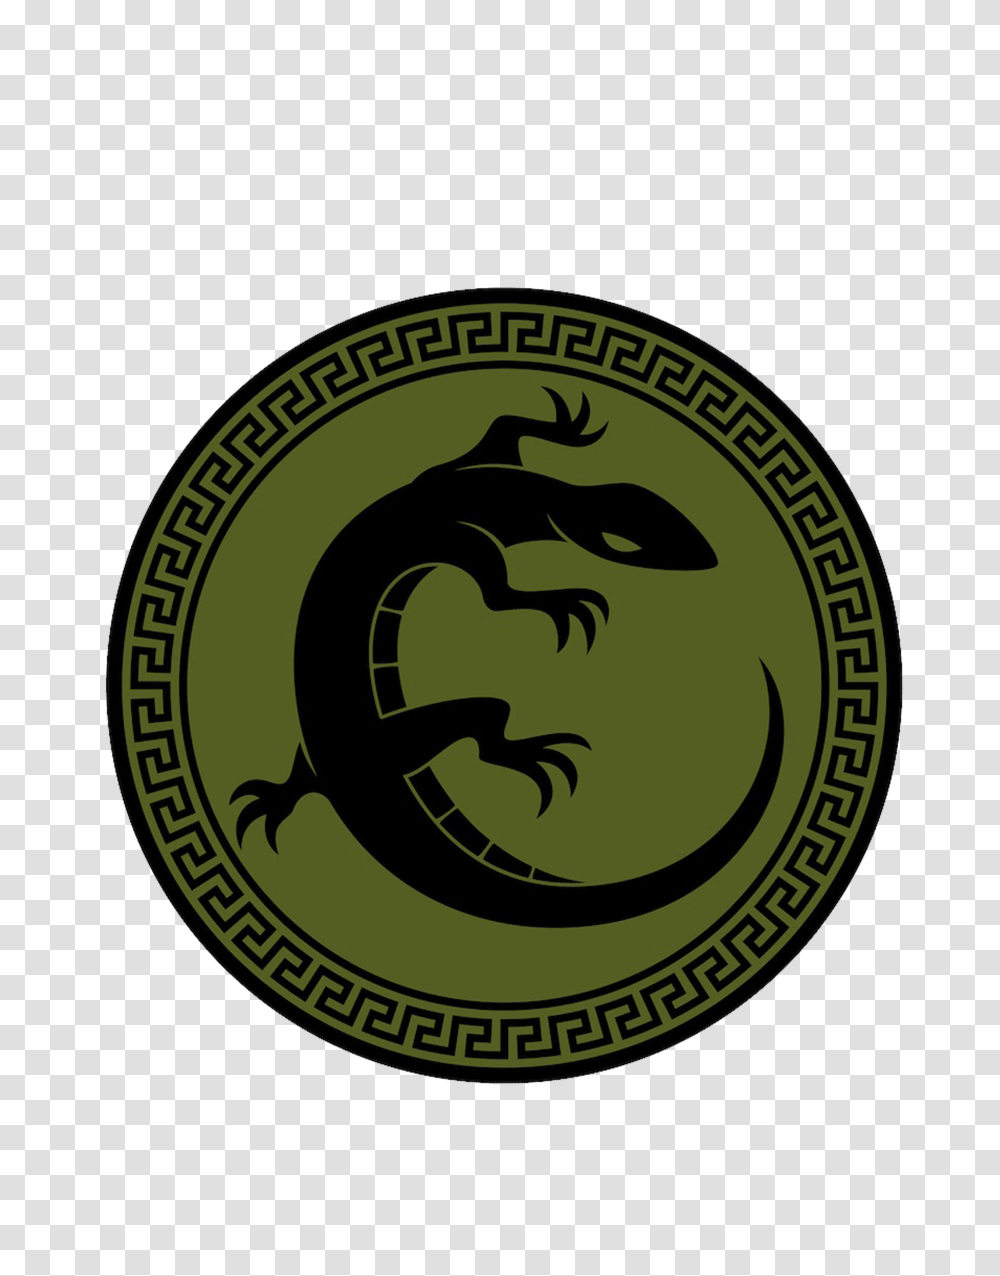 Enders Game Battle School Army Logo Images Collider, Label, Emblem Transparent Png